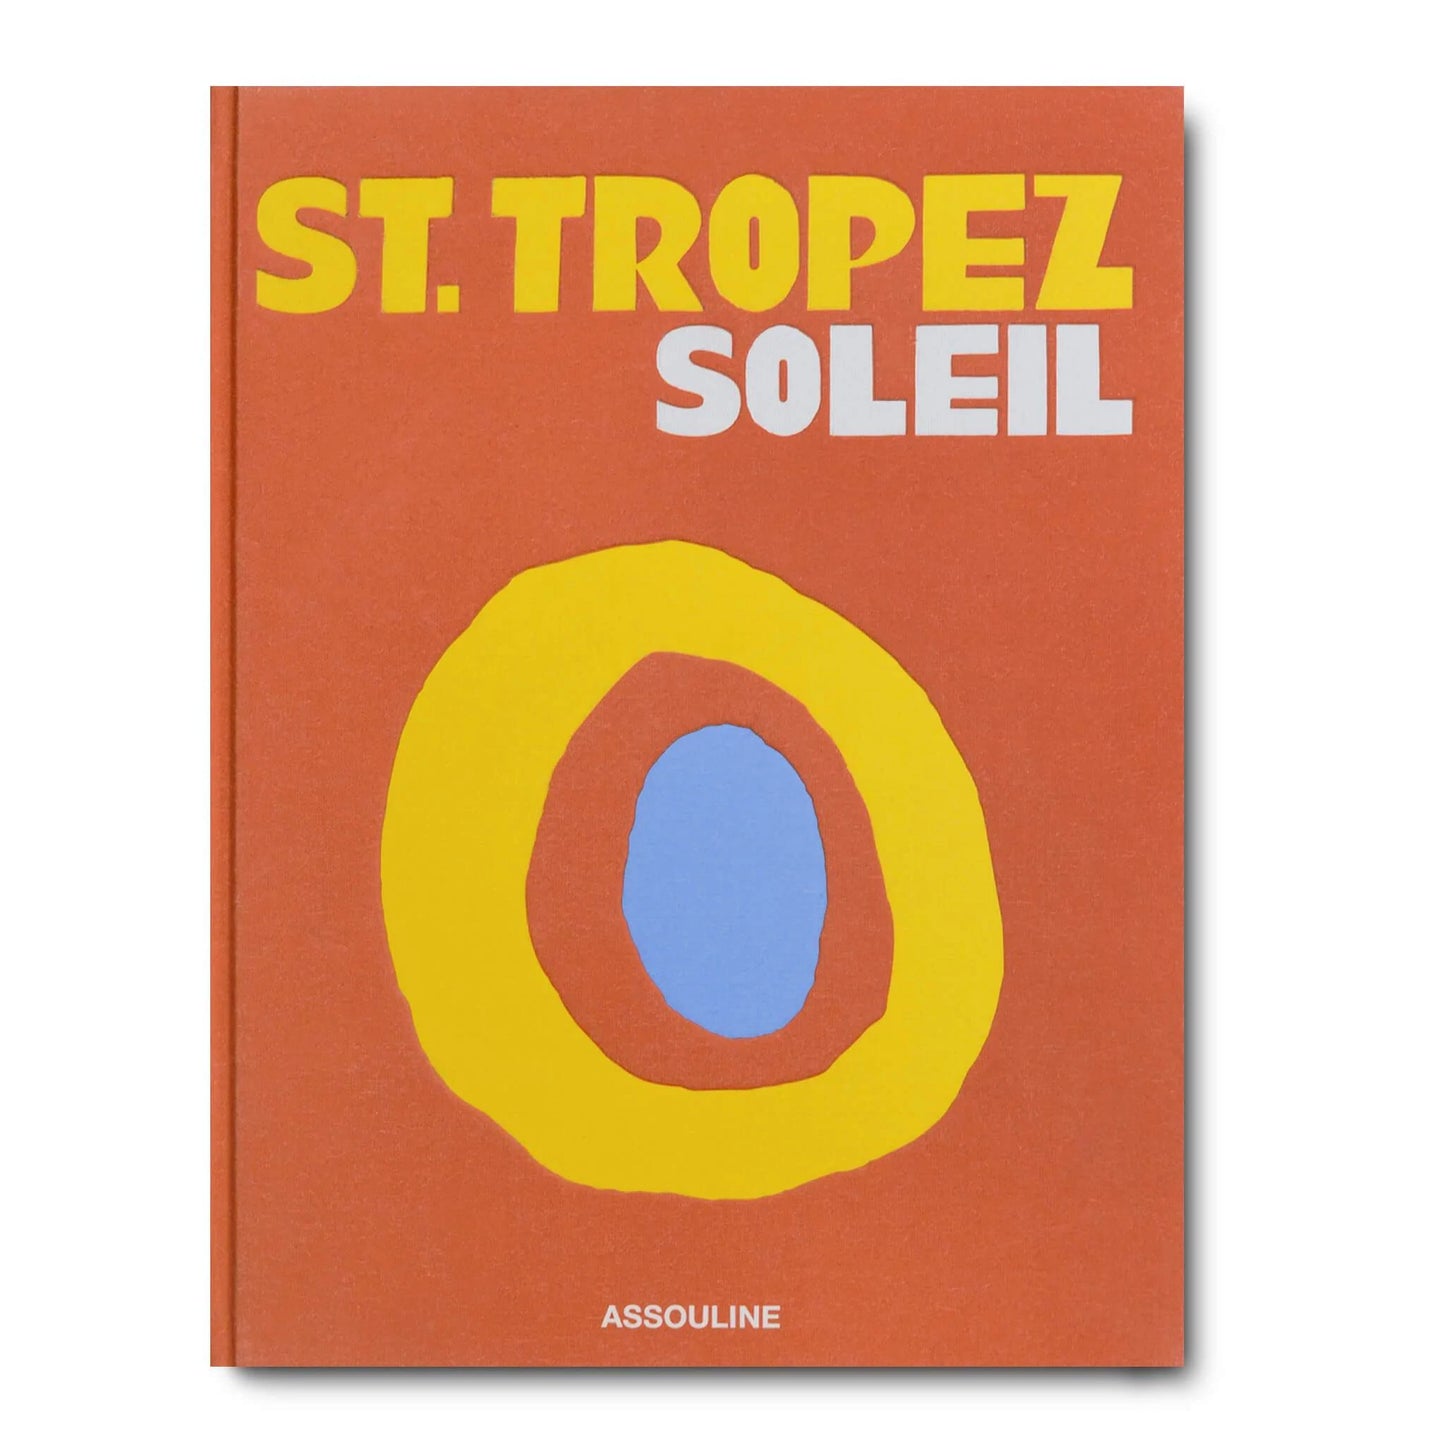 ST.TROPEZ SOLEIL BOOK - $95